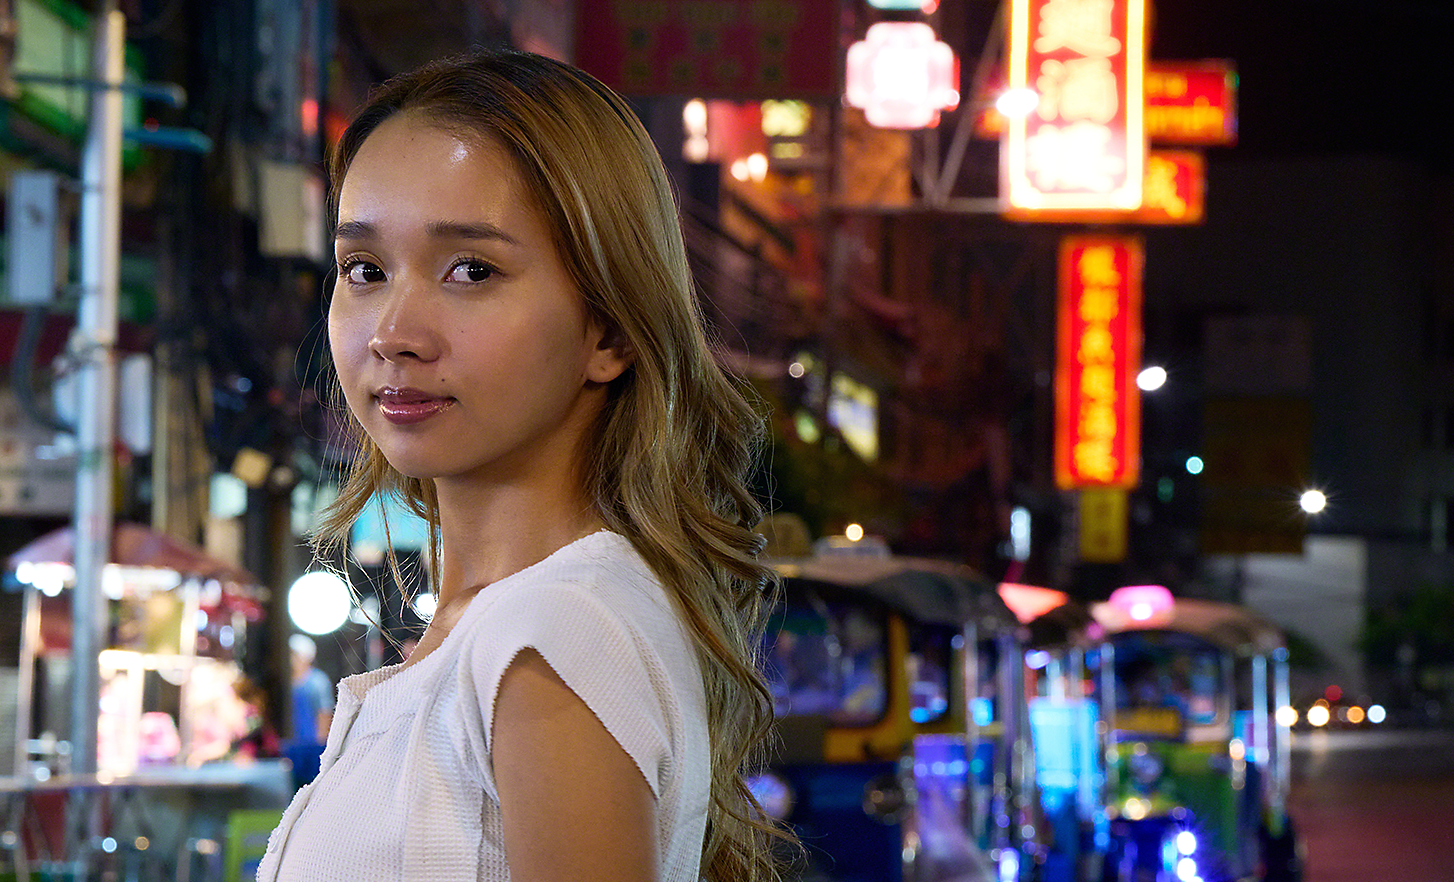 Portrét mladej ženy na rušnej ulici v meste v noci